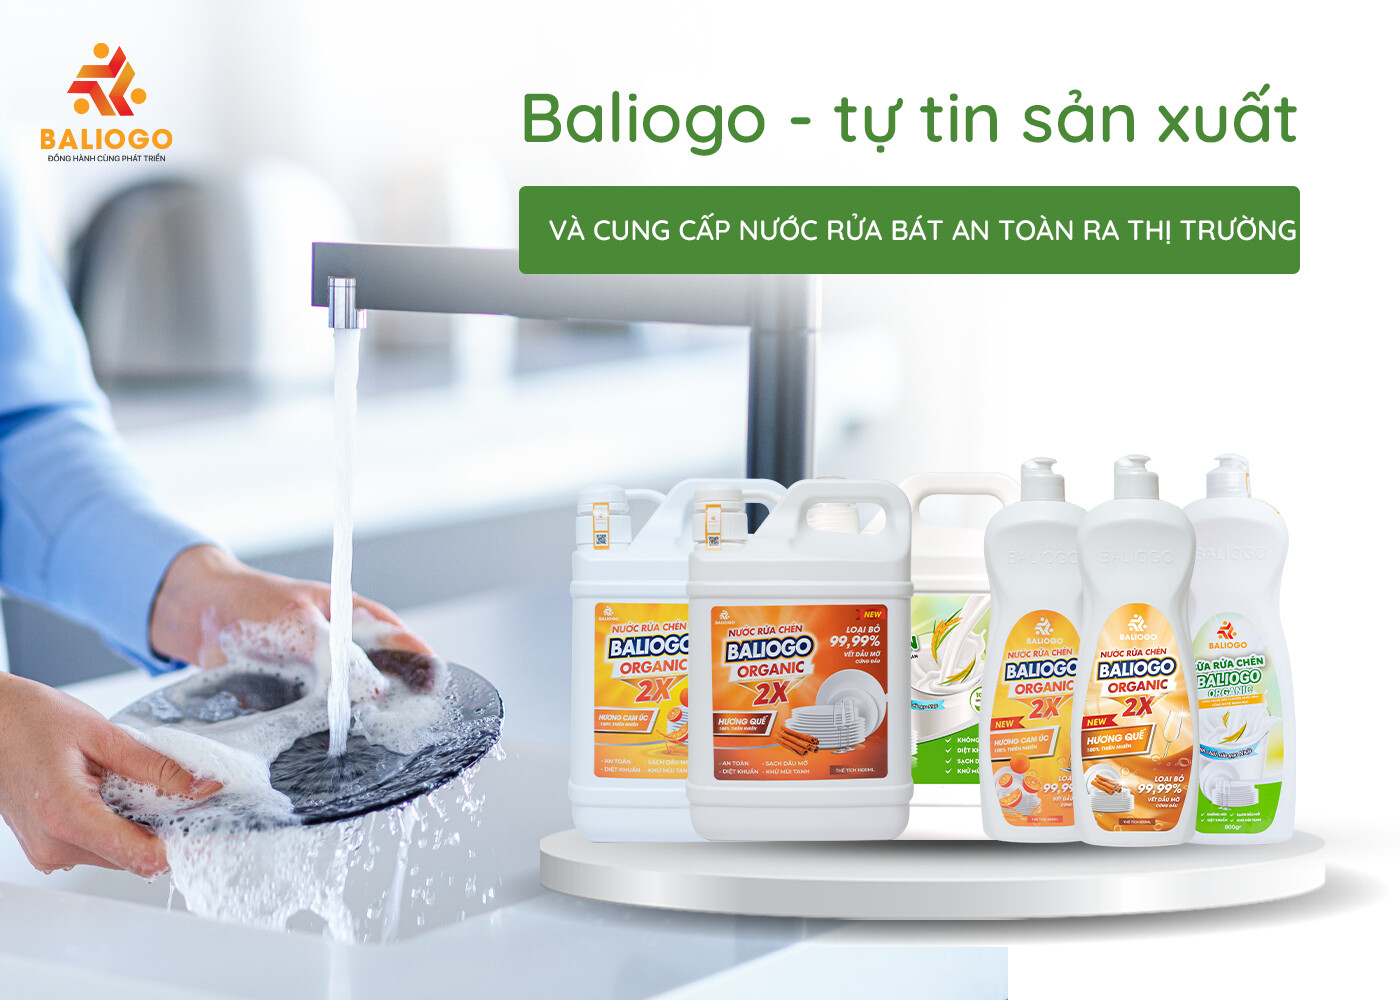 Baliogo tự tin sản xuất và cung cấp nước rửa bát an toàn ra thị trường